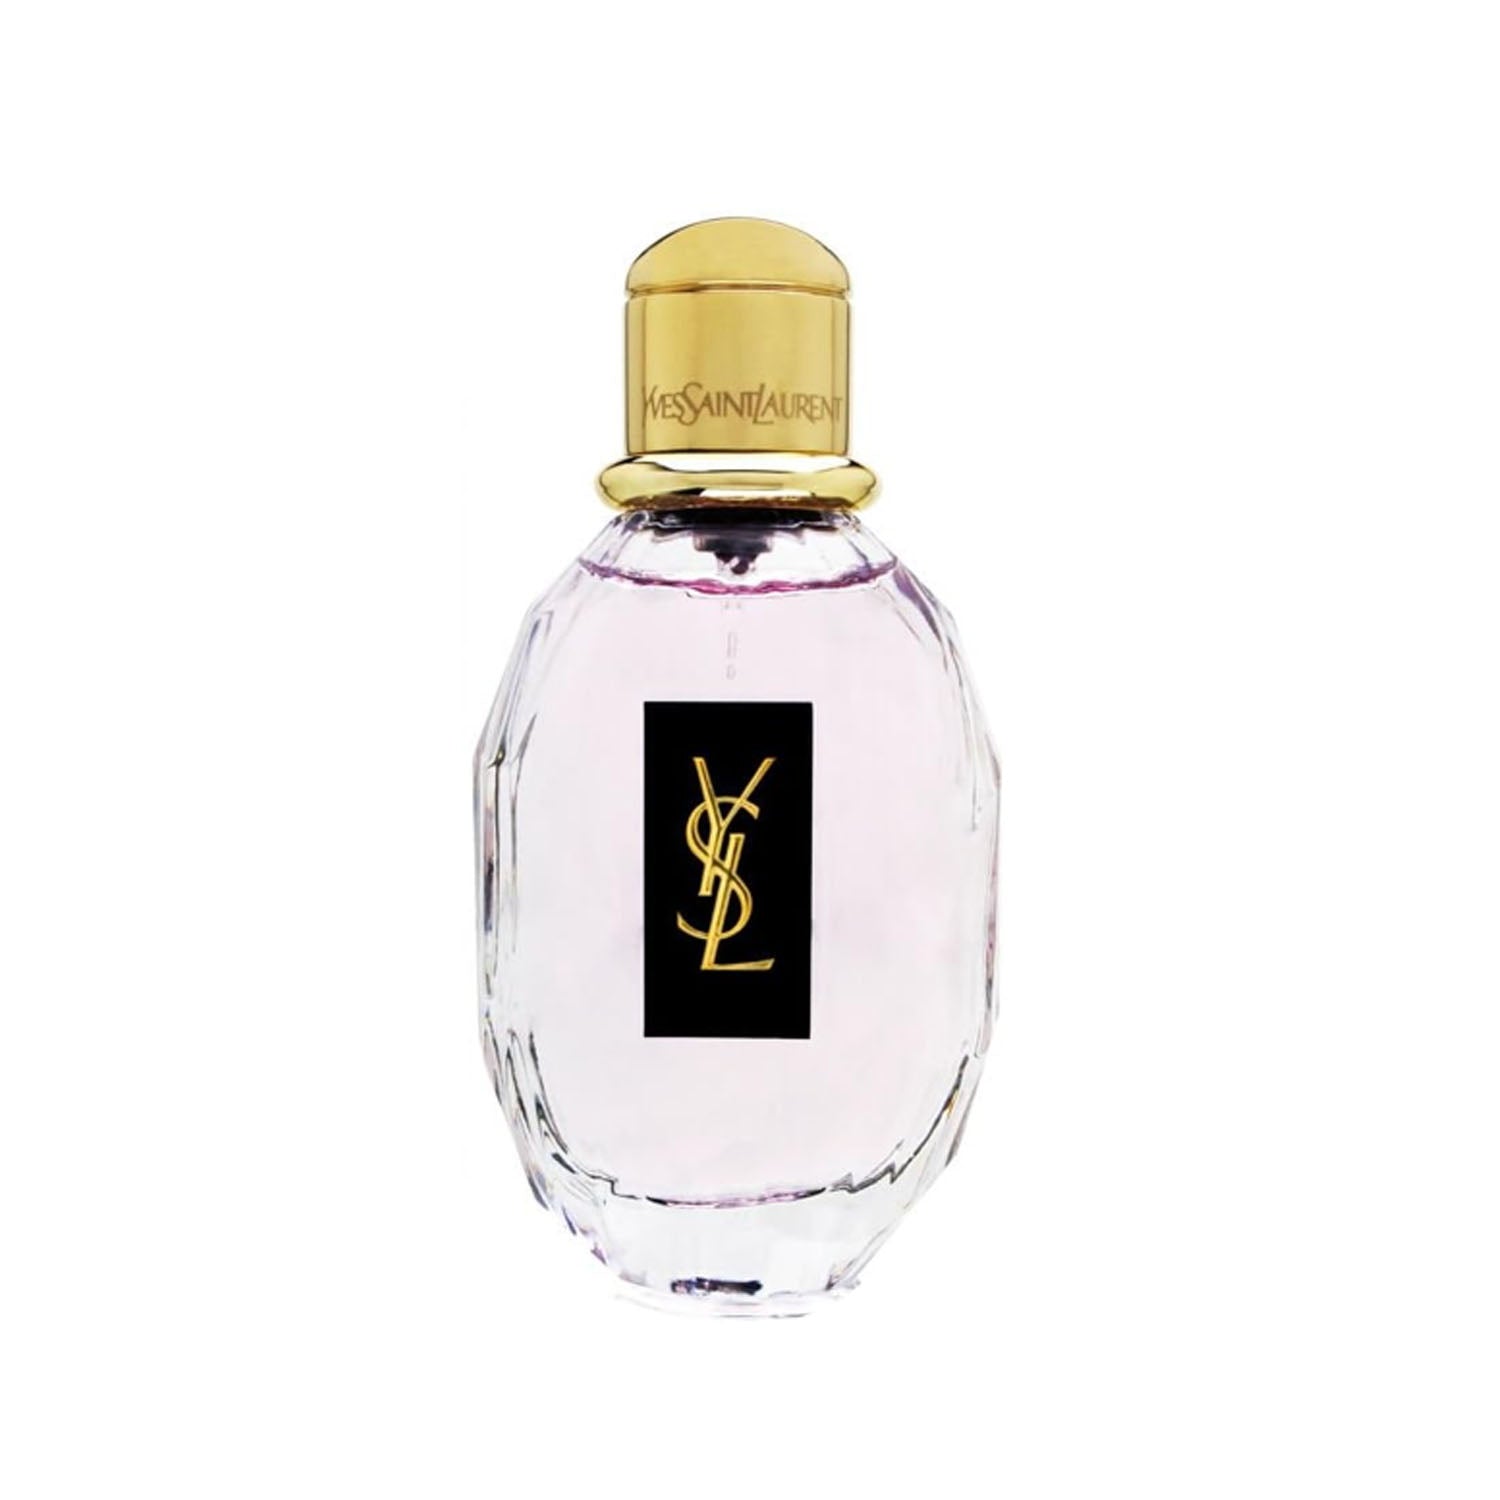 Yves Saint Laurent Parisienne 90 ml Eau De Parfum Spray for Women